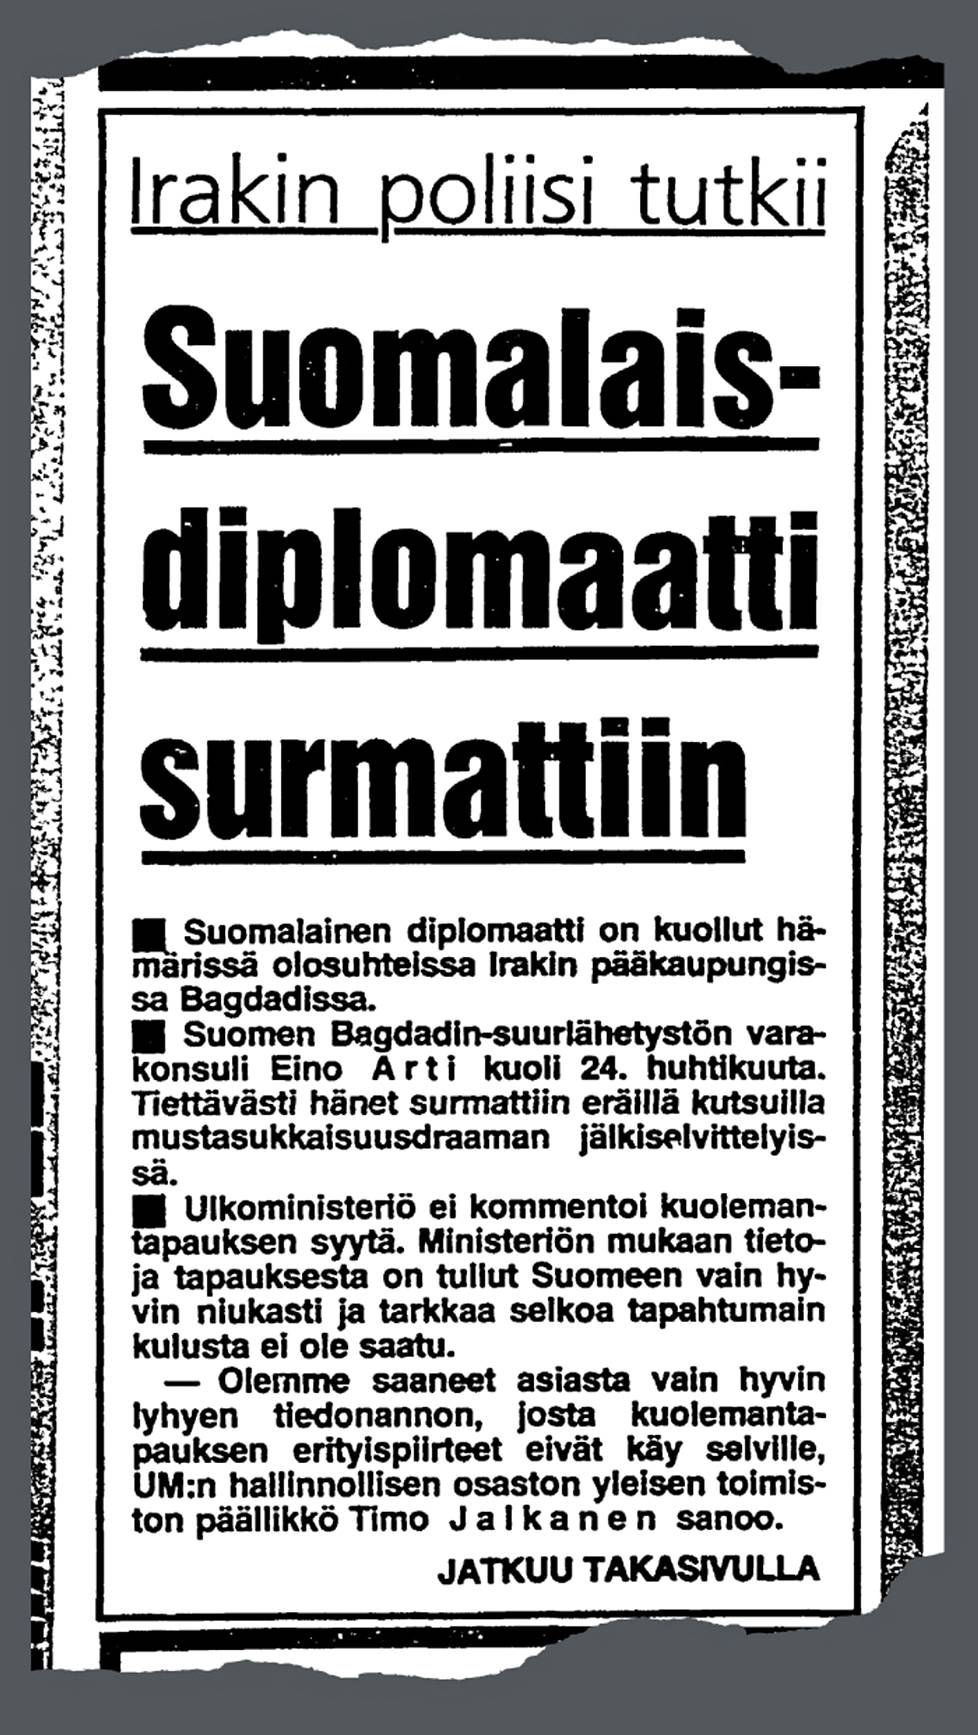 Suomen varakonsuli kuoli 39 vuotta sitten luotiin virka-asunnossaan  Bagdadissa – seurasi vuosikymmenten hiljaisuus, jonka irakilaiset  turvallisuuslähteet ovat nyt rikkoneet - Ulkomaat 